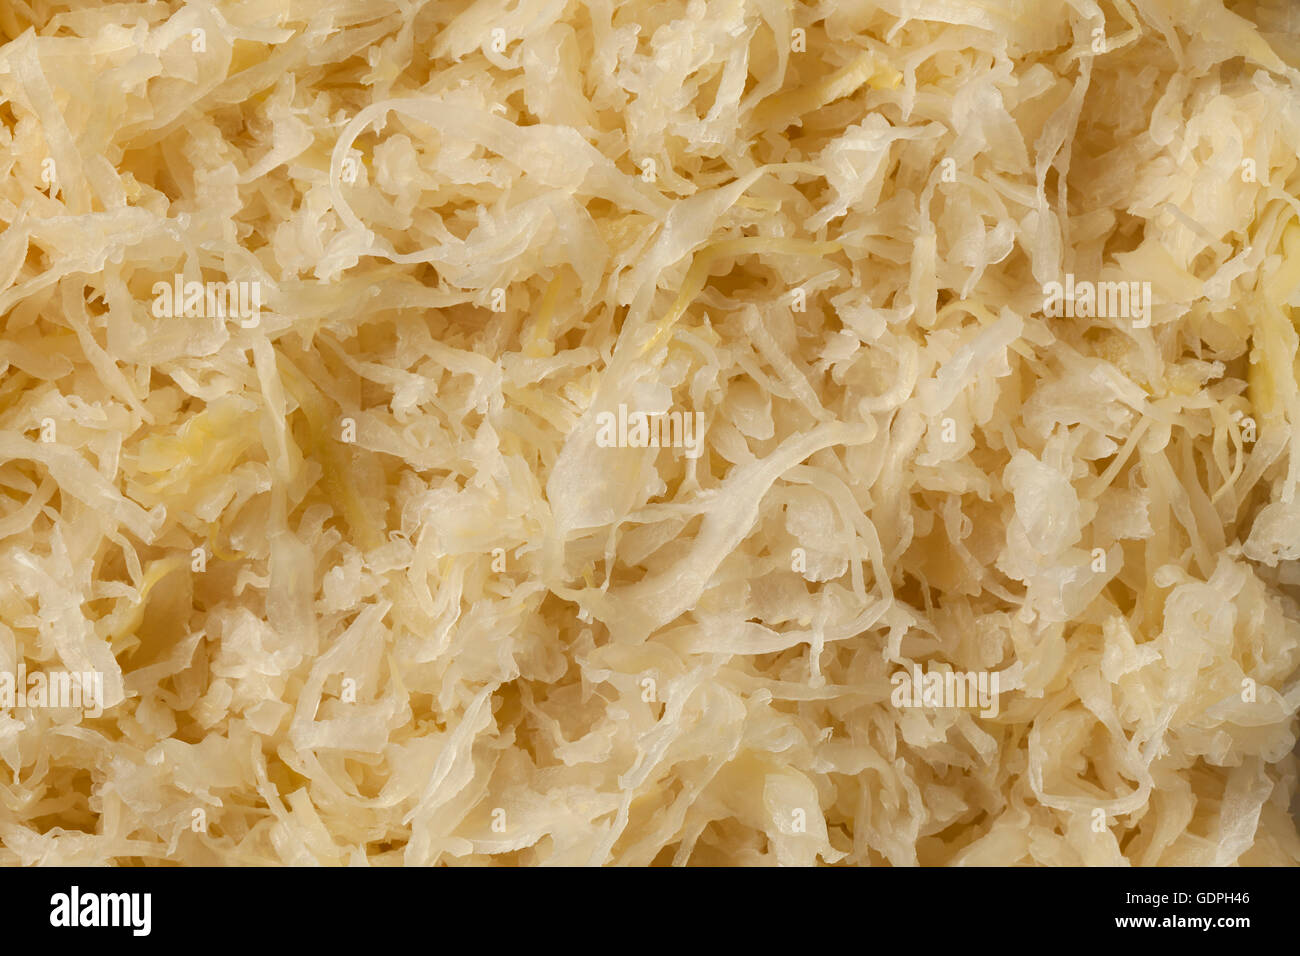 Preserved sauerkraut full frame Stock Photo